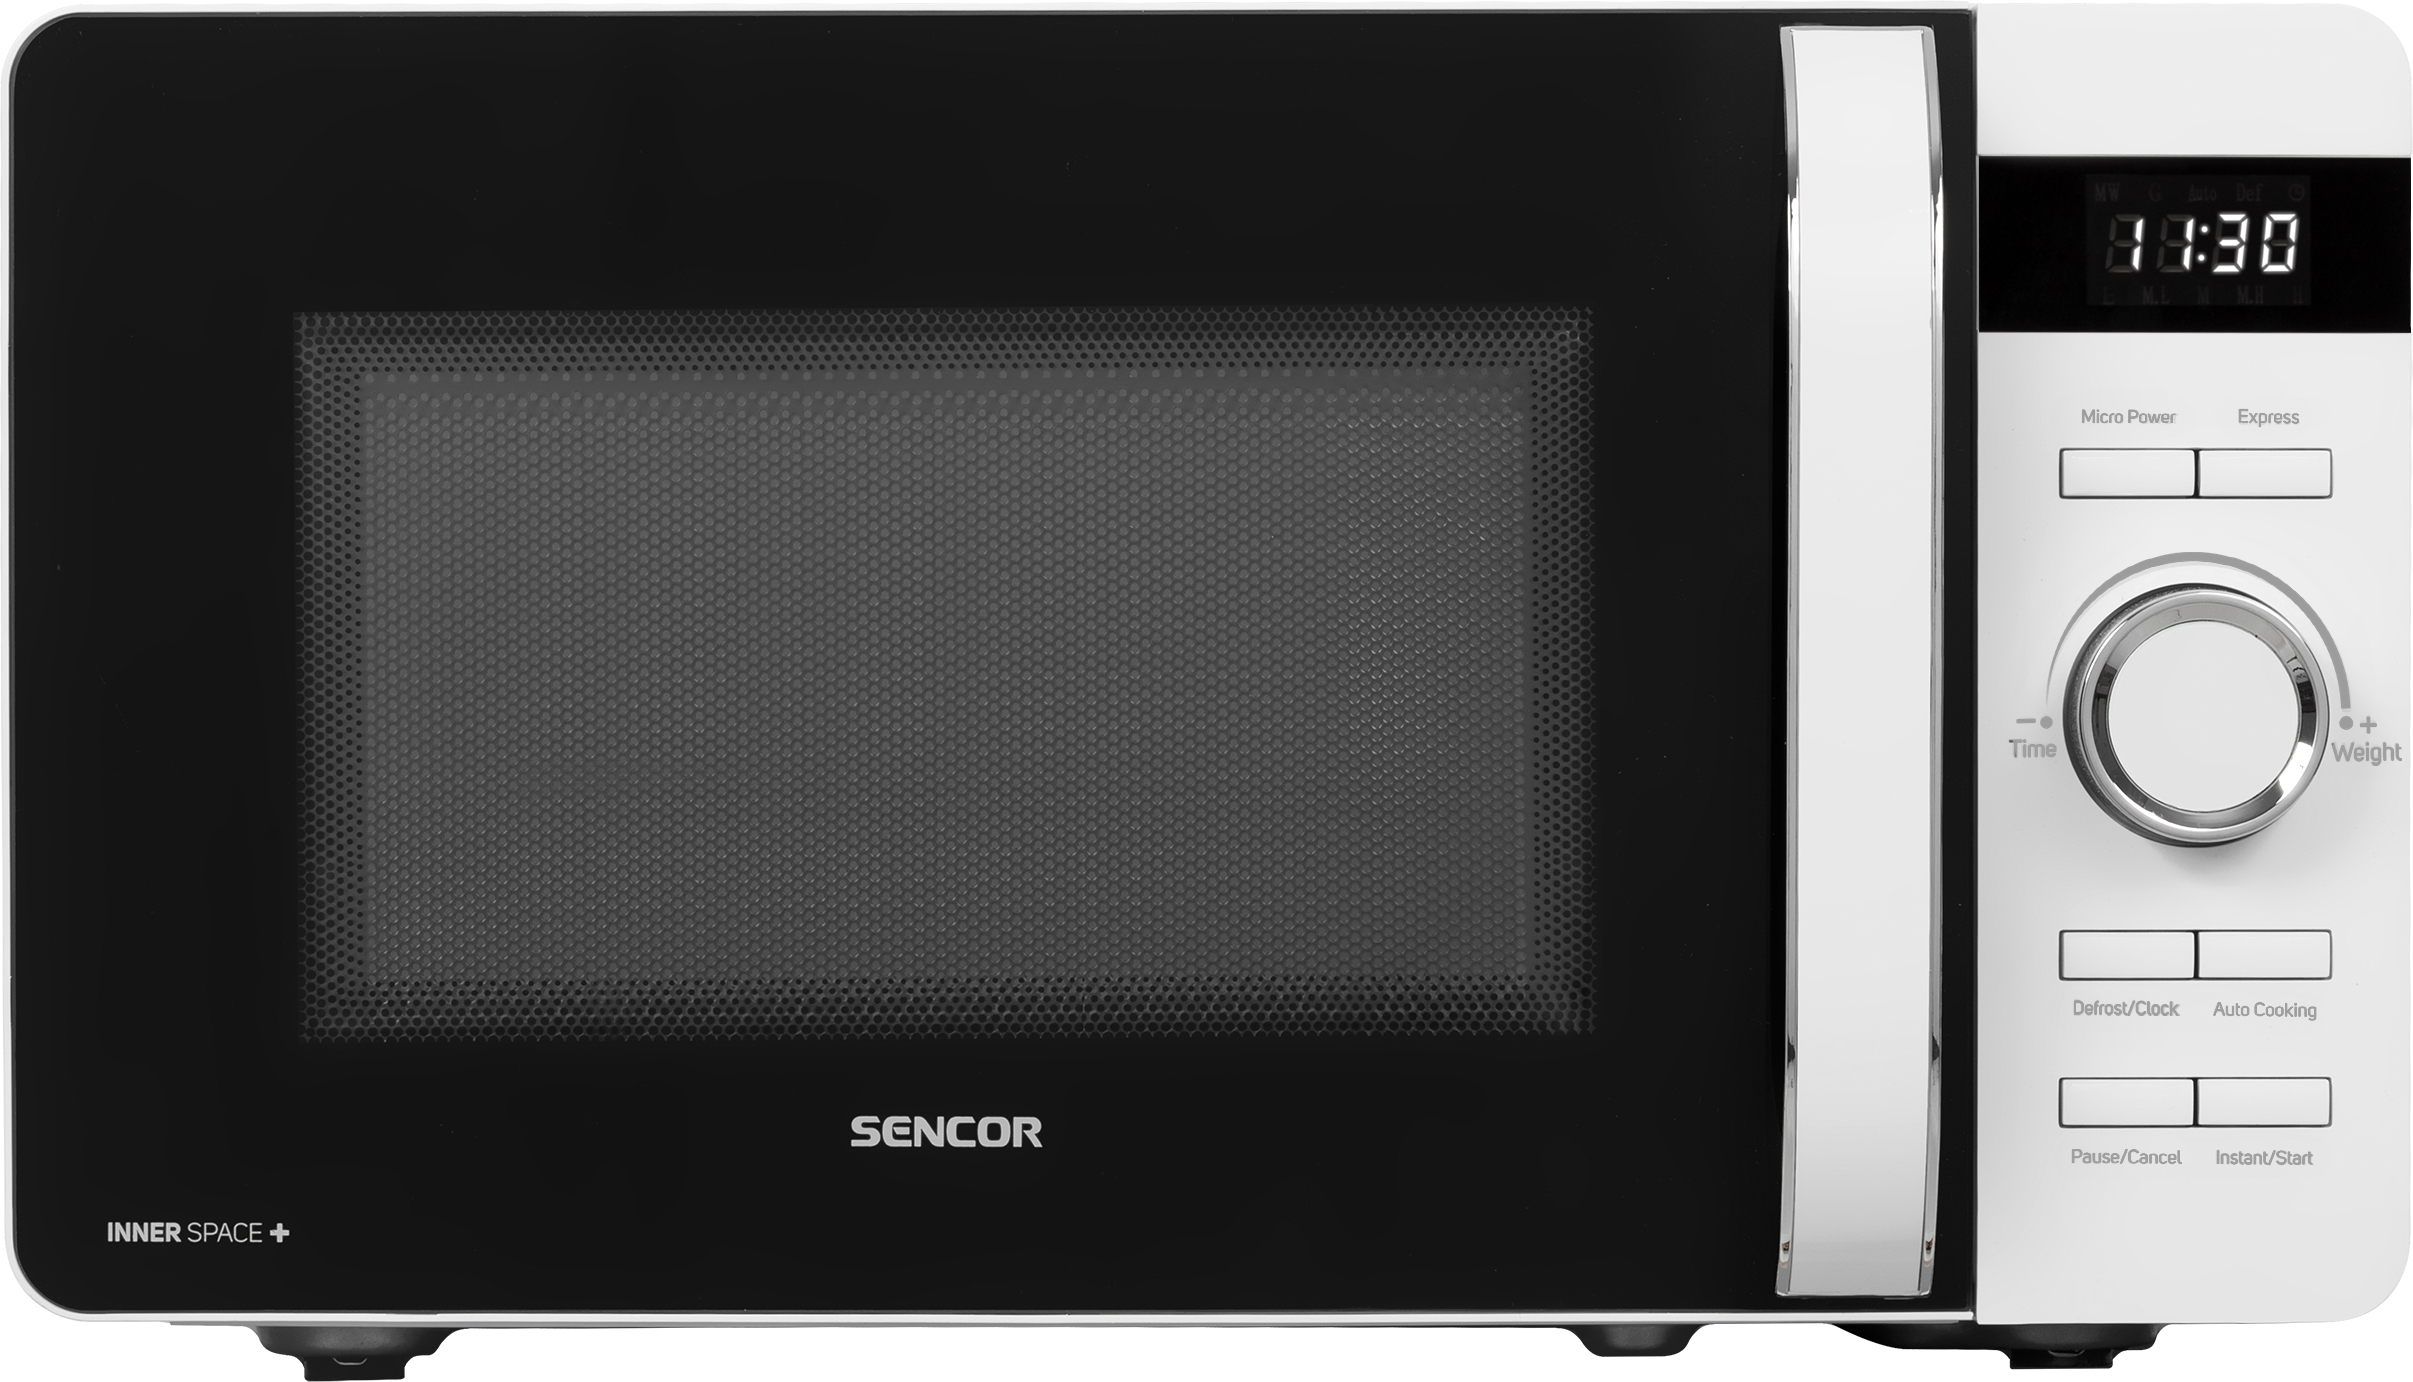 Микроволновая печь с грилем Sencor SMW5517WH в интернет-магазине, главное фото